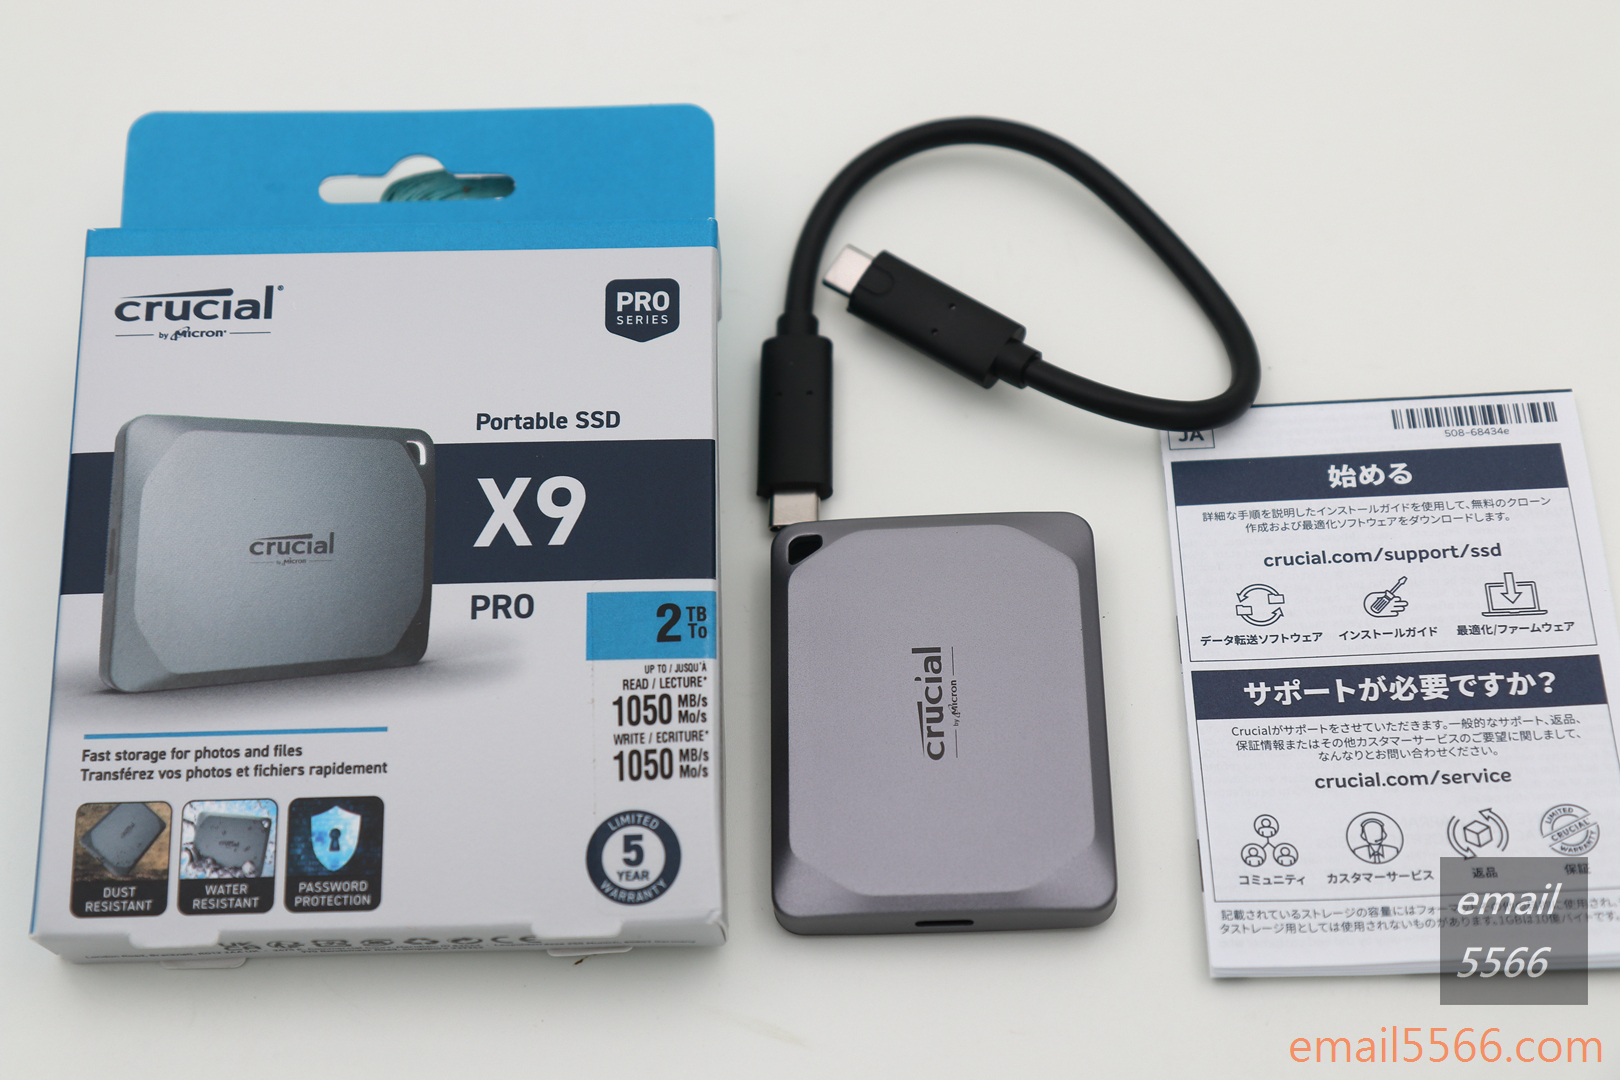 美光 Crucial X9 Pro 行動SSD硬碟 2TB 開箱-盒裝內容物